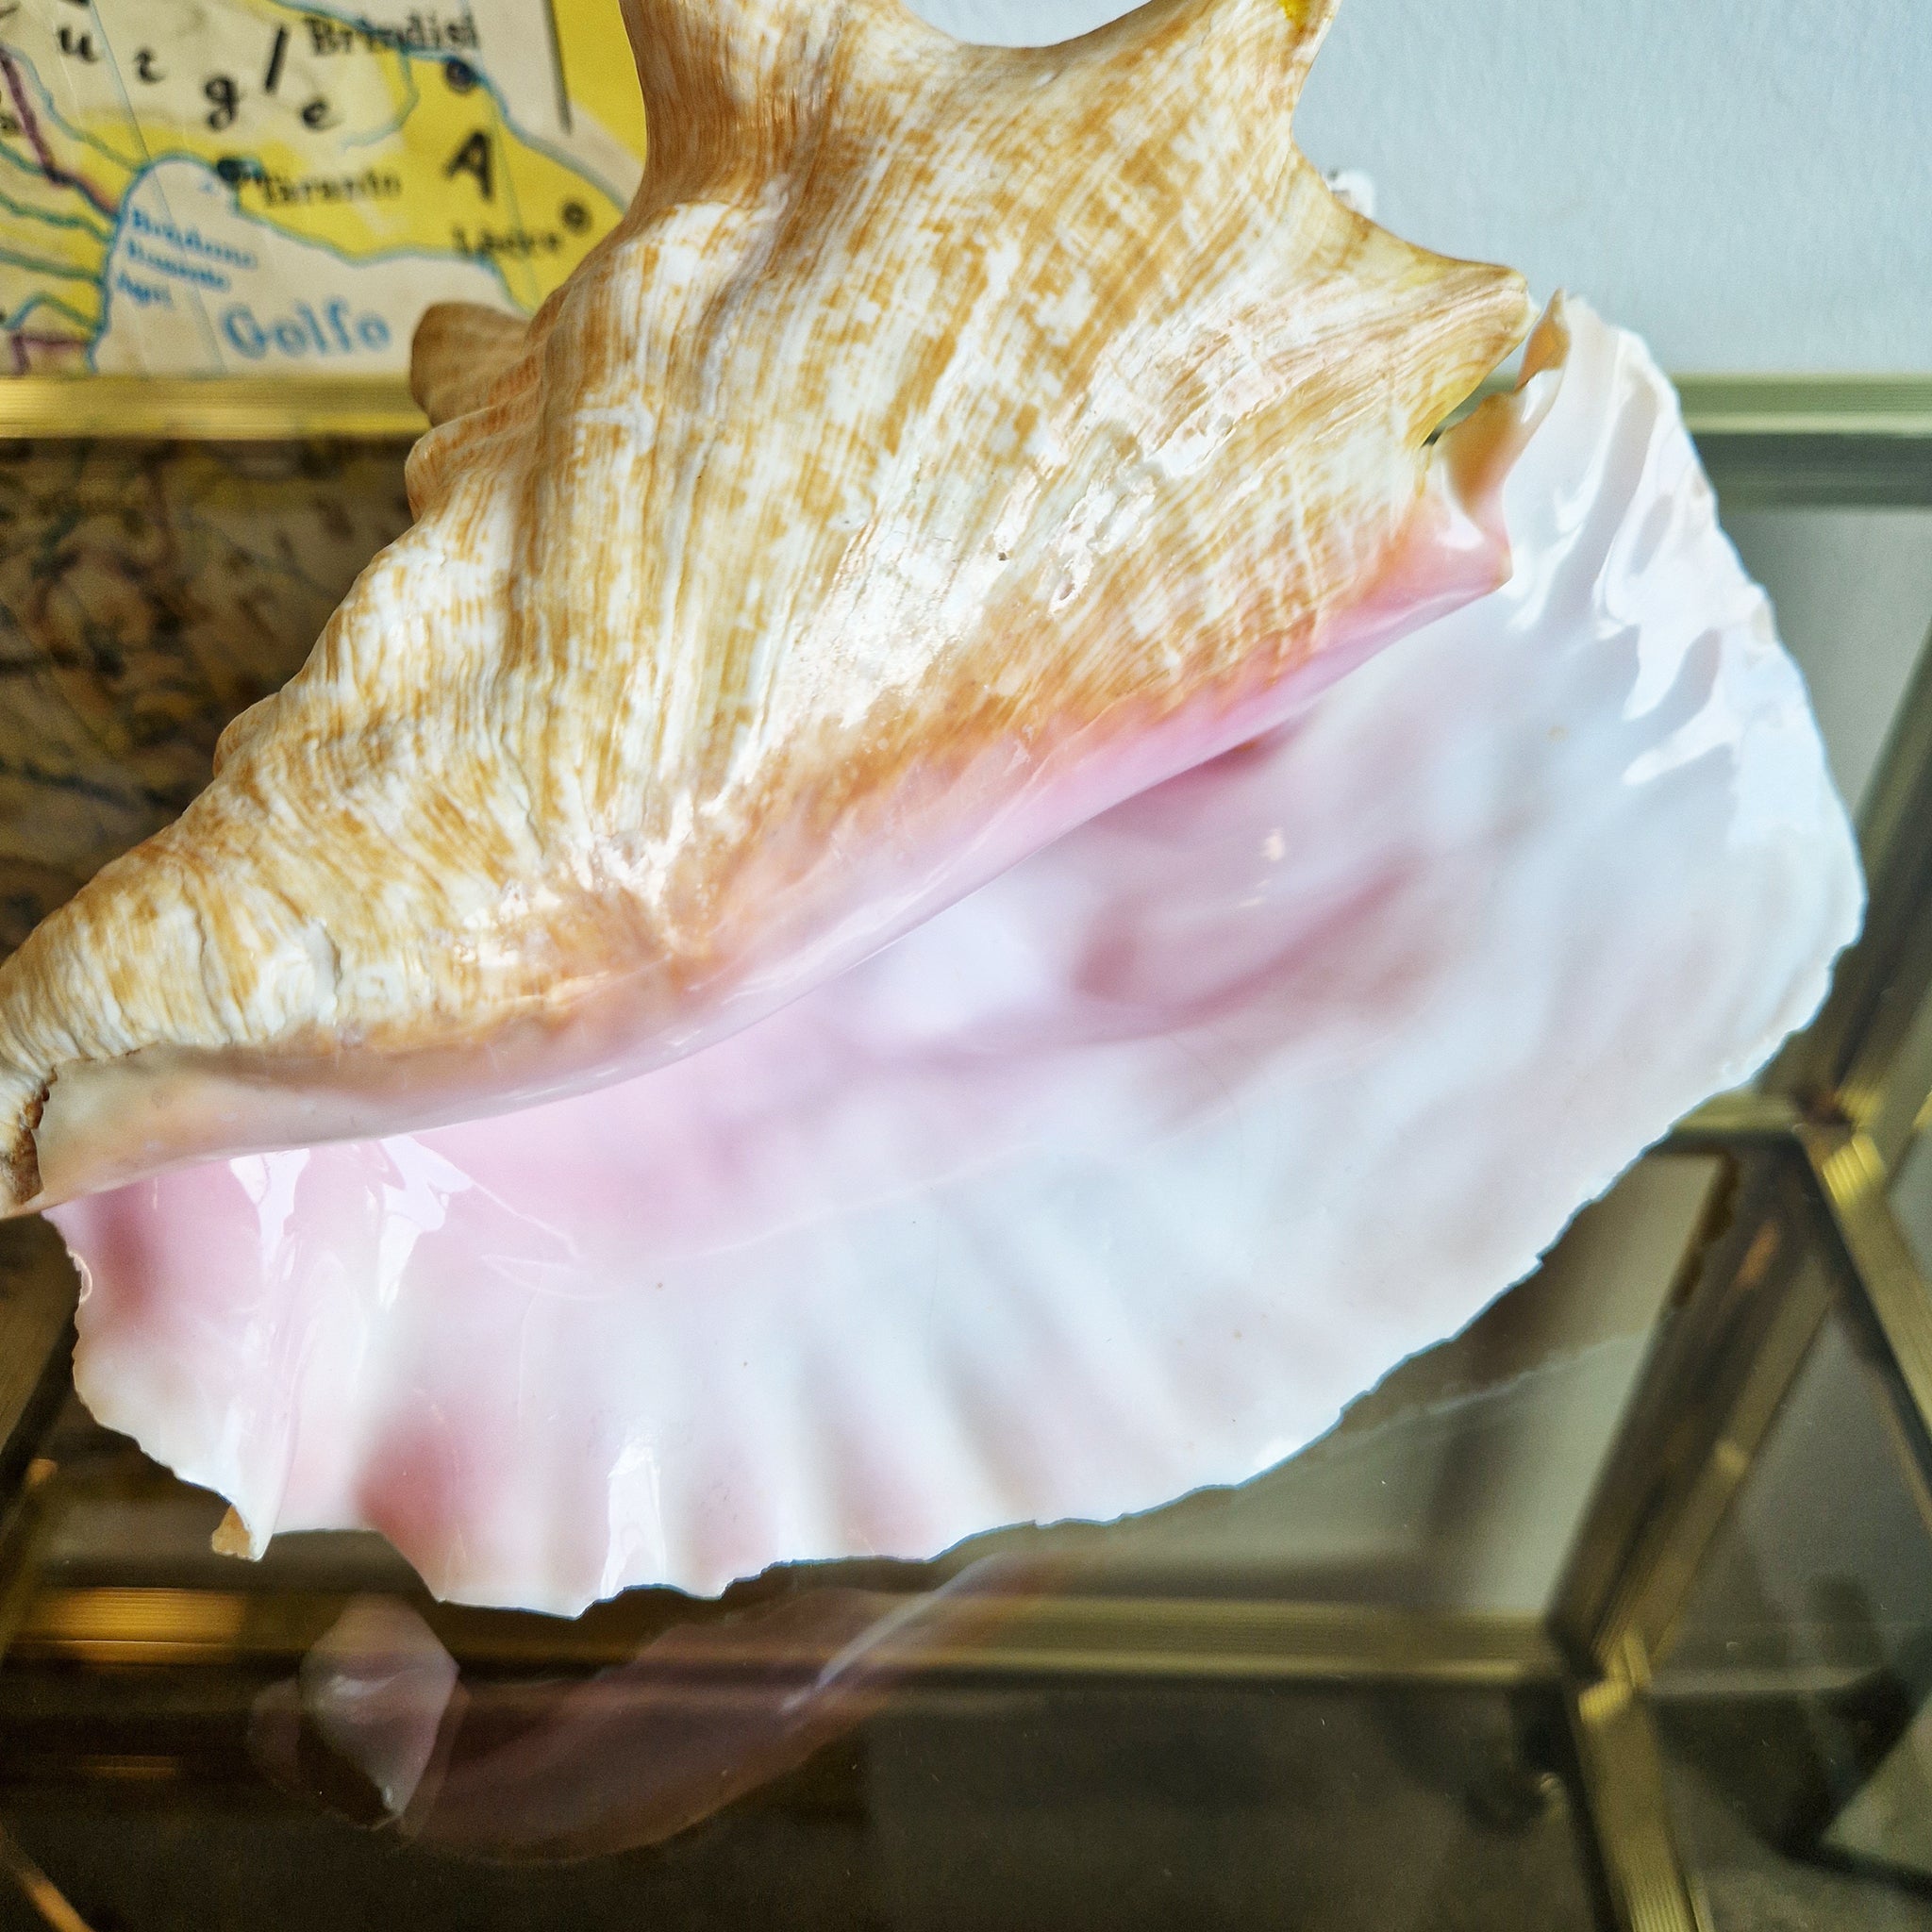 Vintage large seashell (Lobatus gigas)